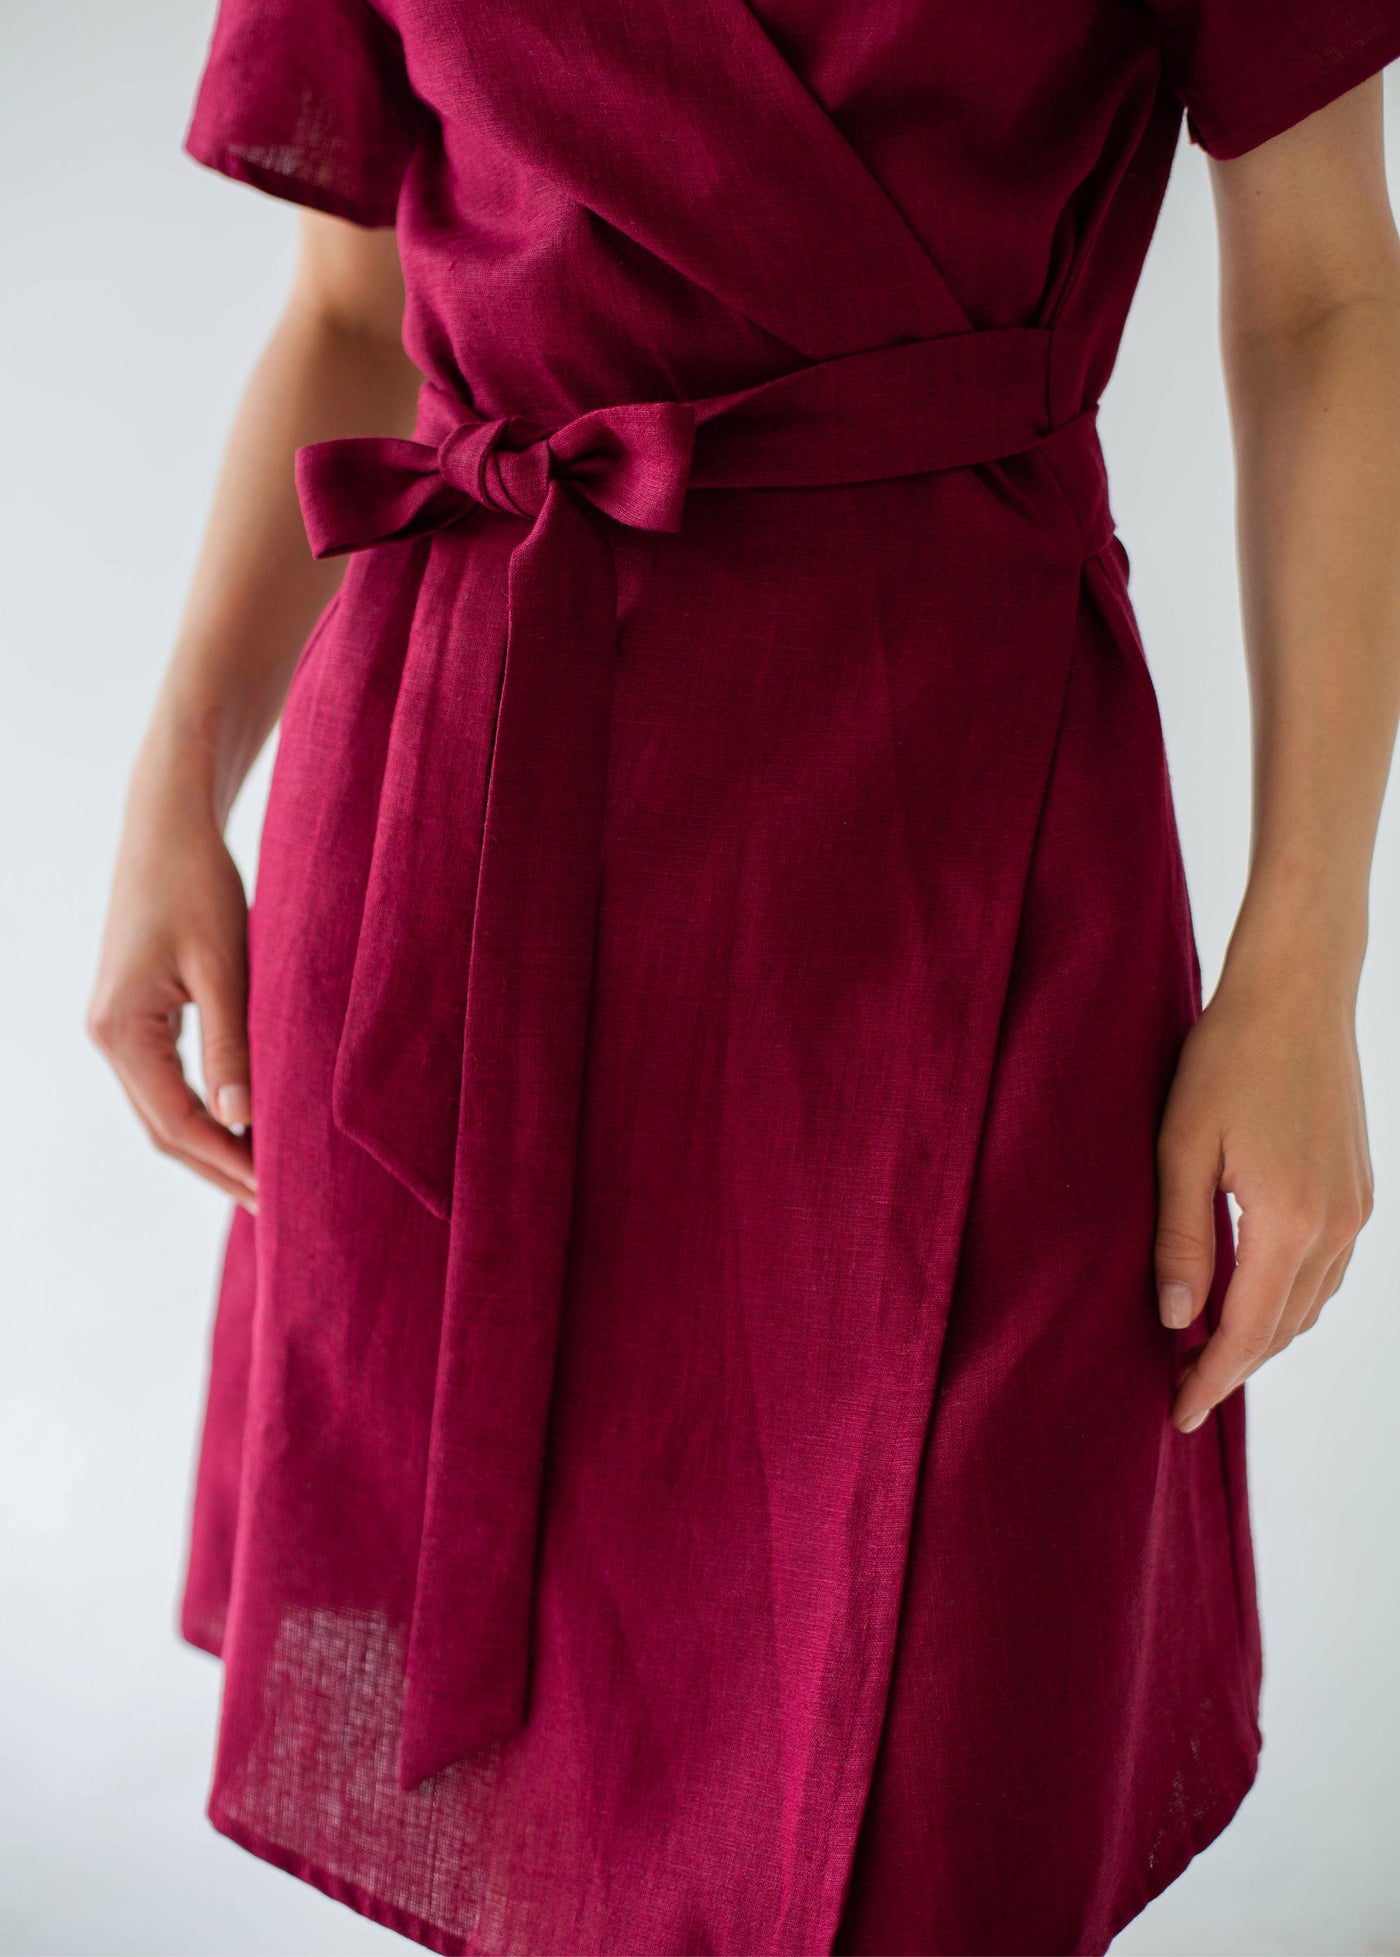 "Taylor" Burgundy Linen Dress